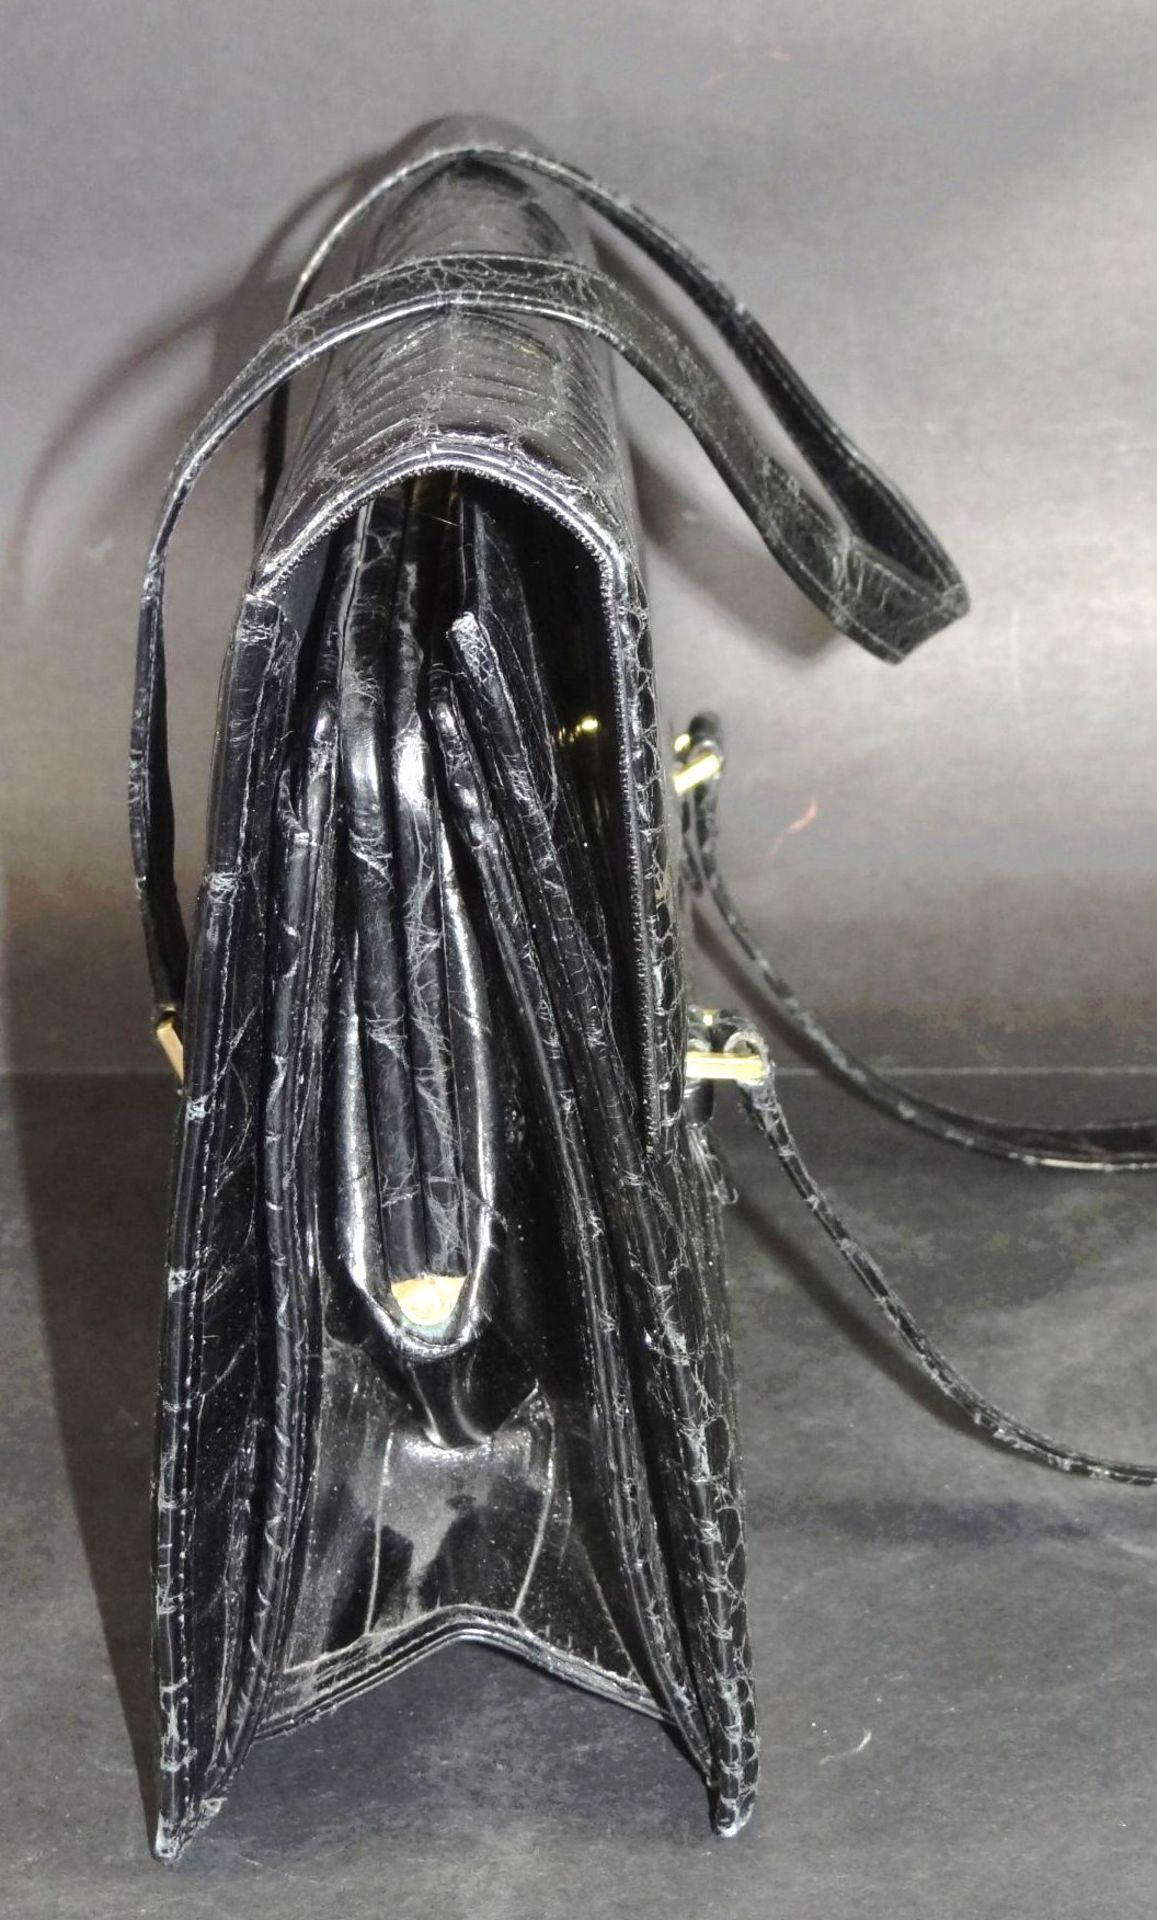 Krokoleder-Handtasche, schwarz, 21x31 cm - Bild 3 aus 4